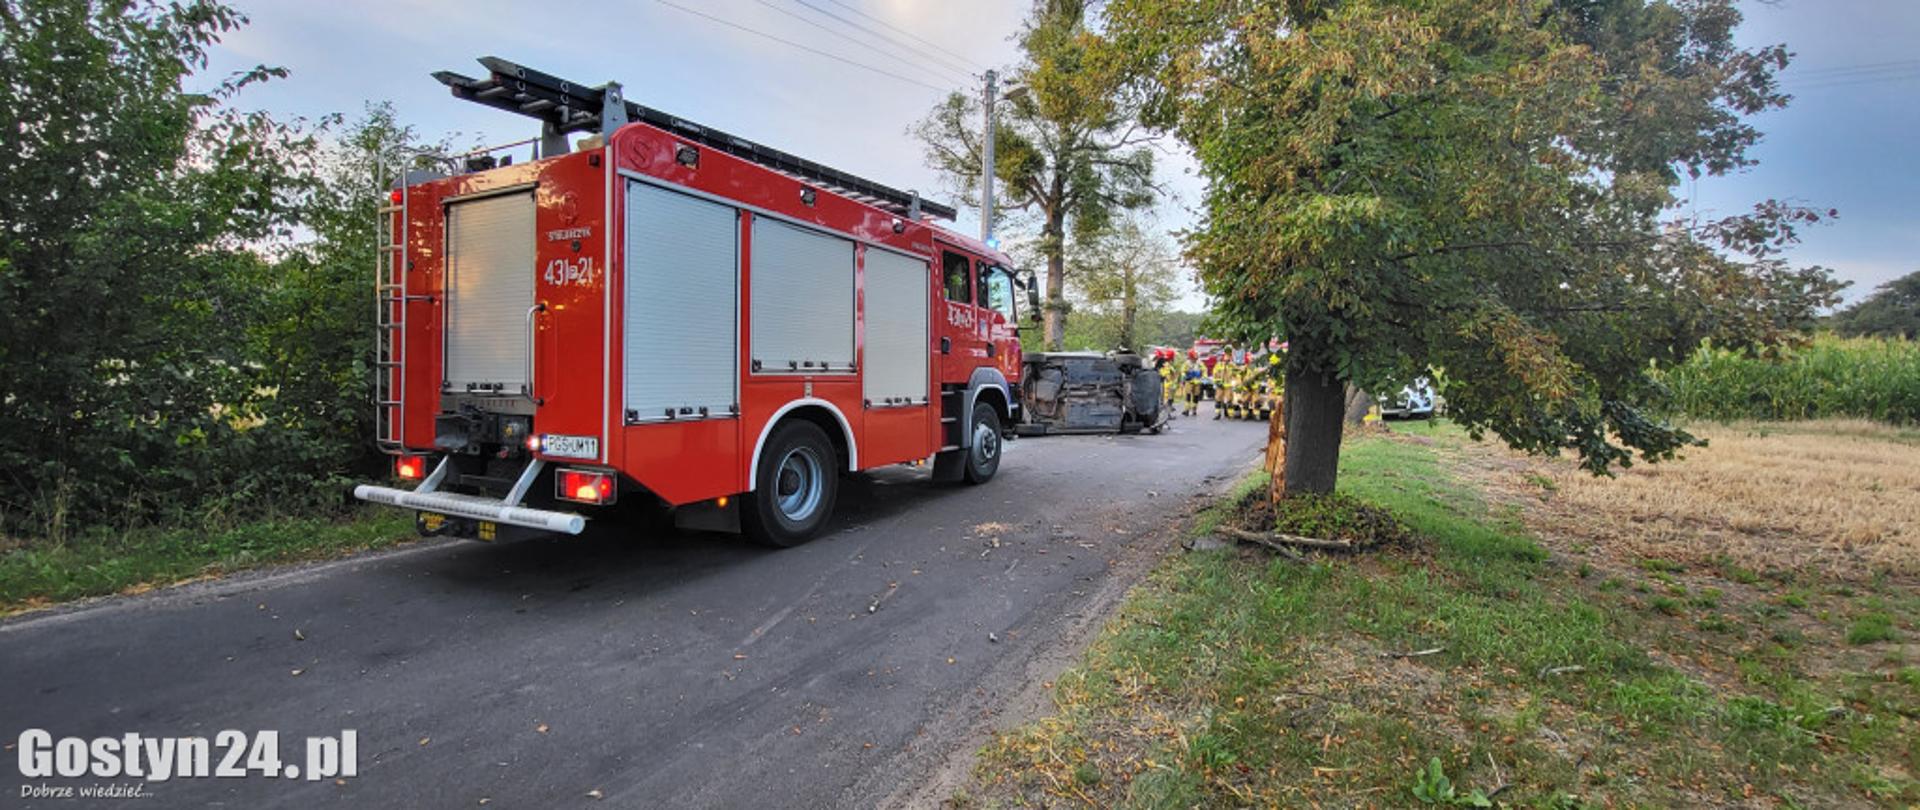 Zdjęcie przedstawia pojazd pożarniczy stojący na drodze.